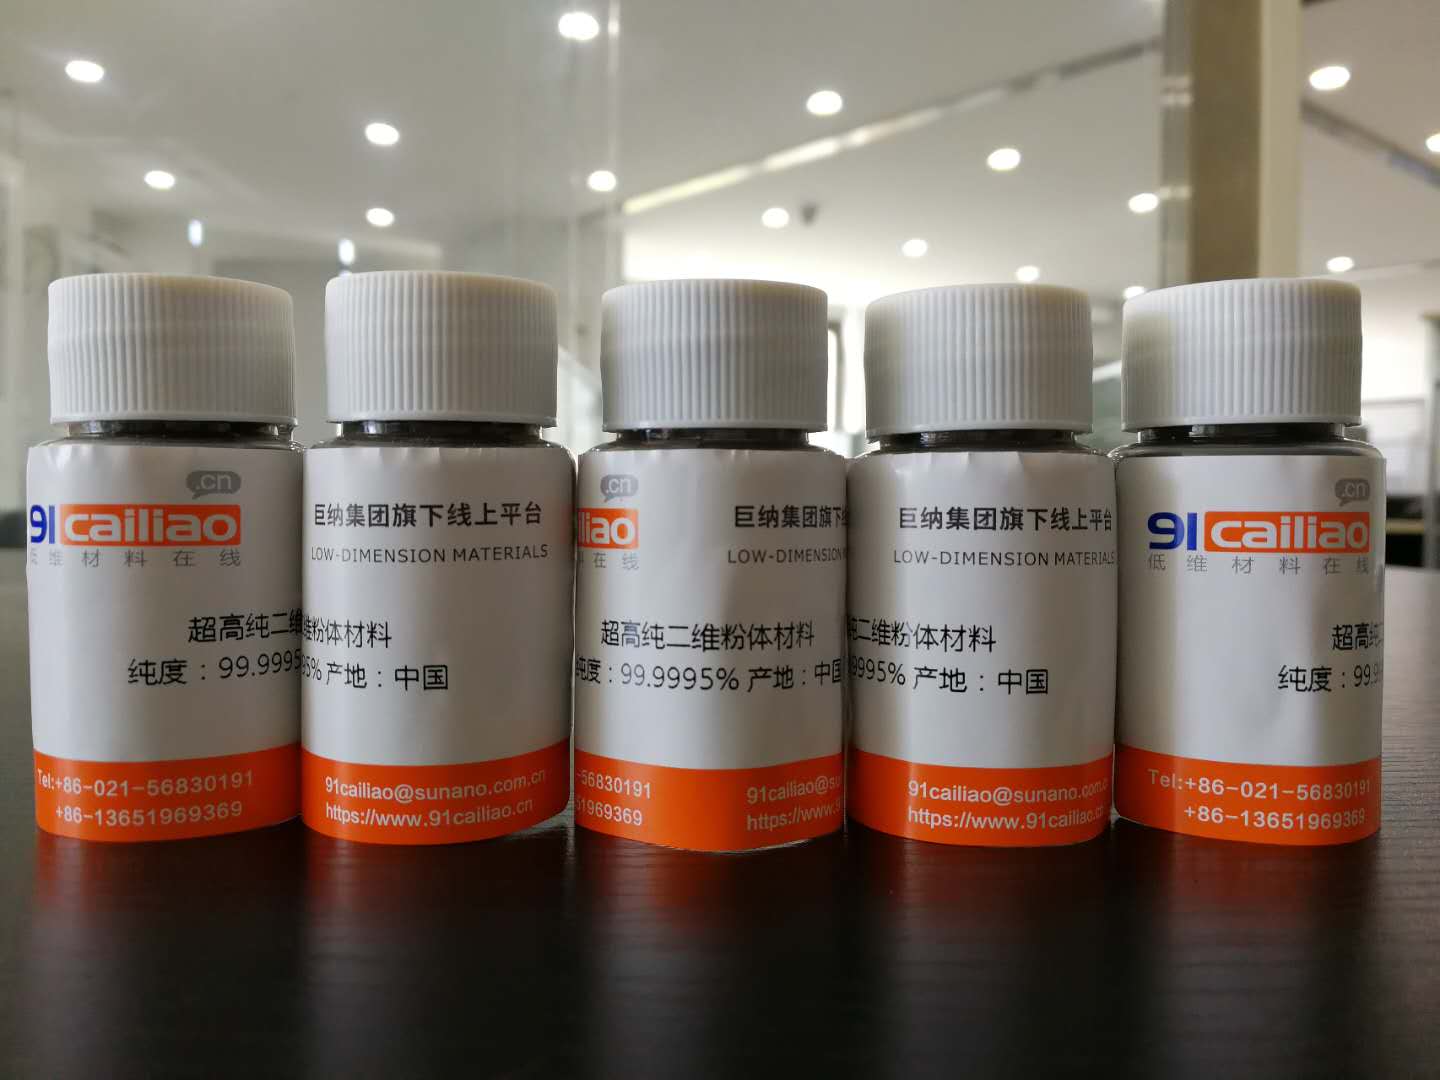 Ultra high pure Bi2Te3 powder